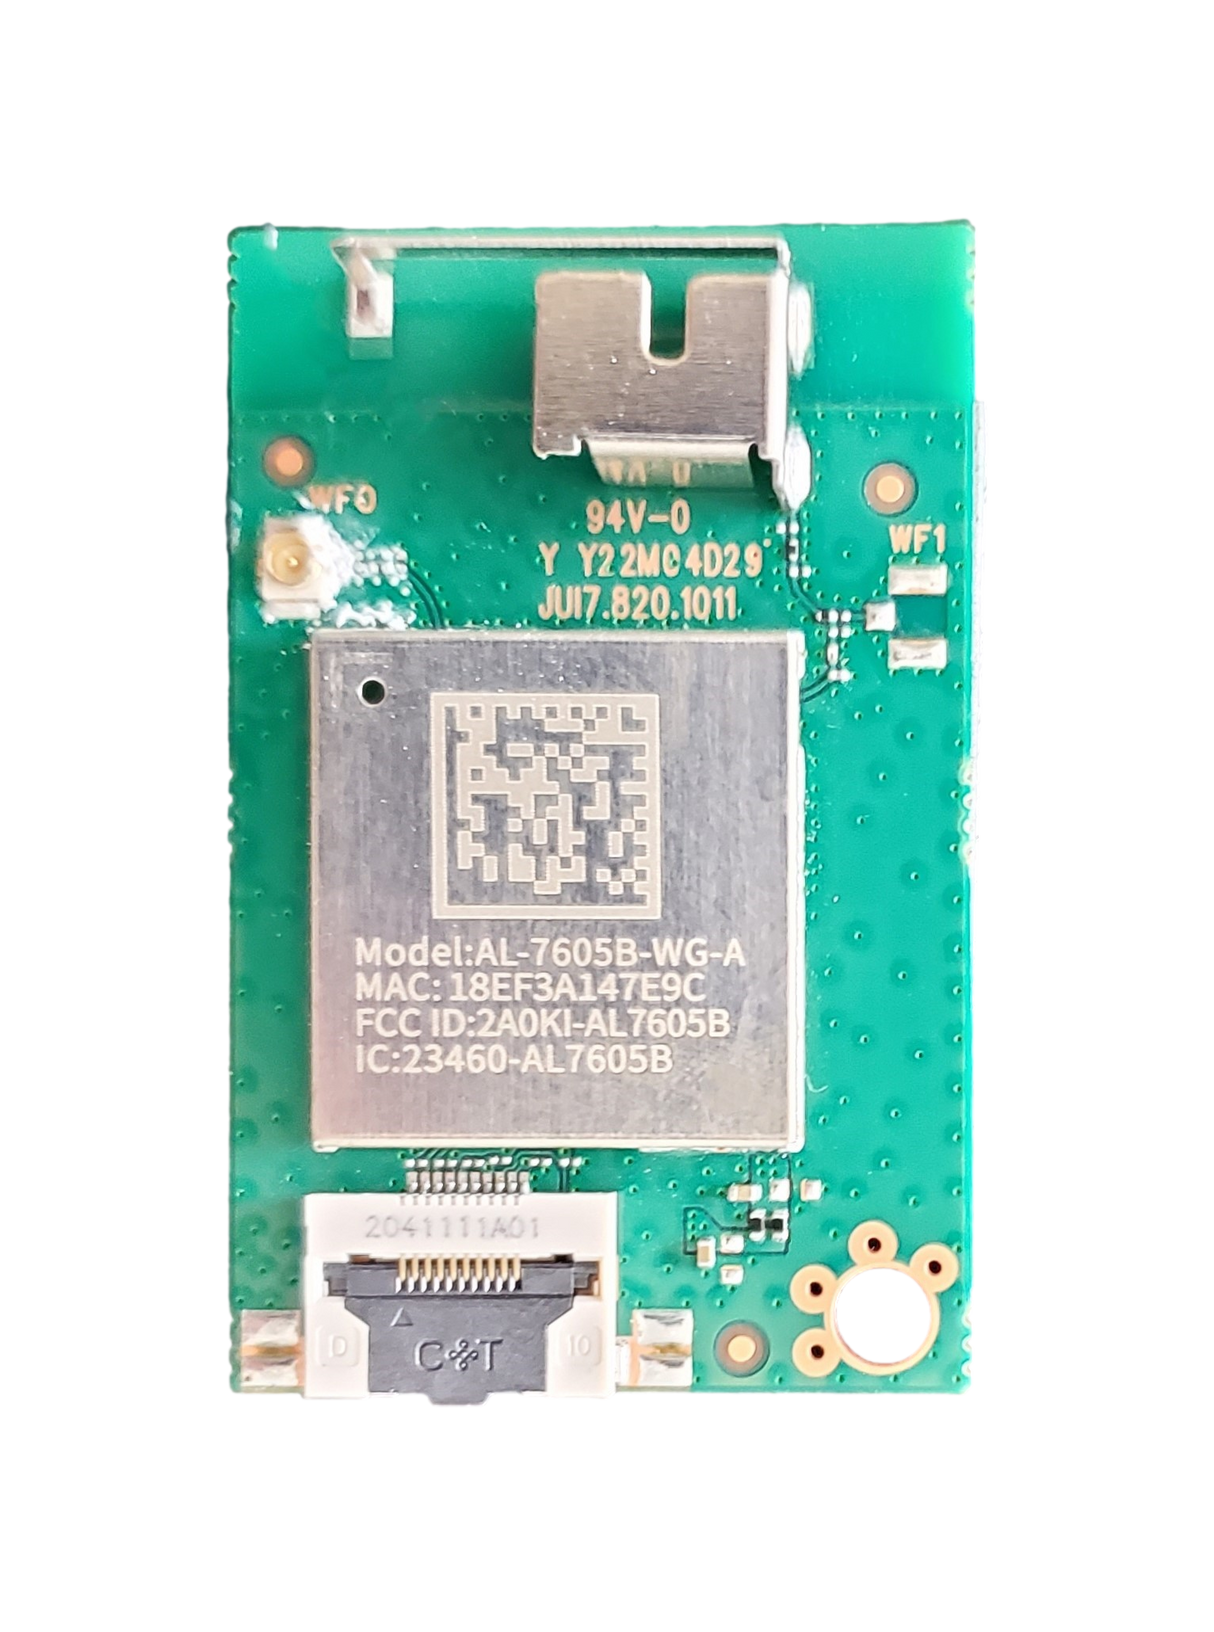 AL-7605B-WG-A, Onn Wi-Fi Board, JUI7.820.1011, 100012585